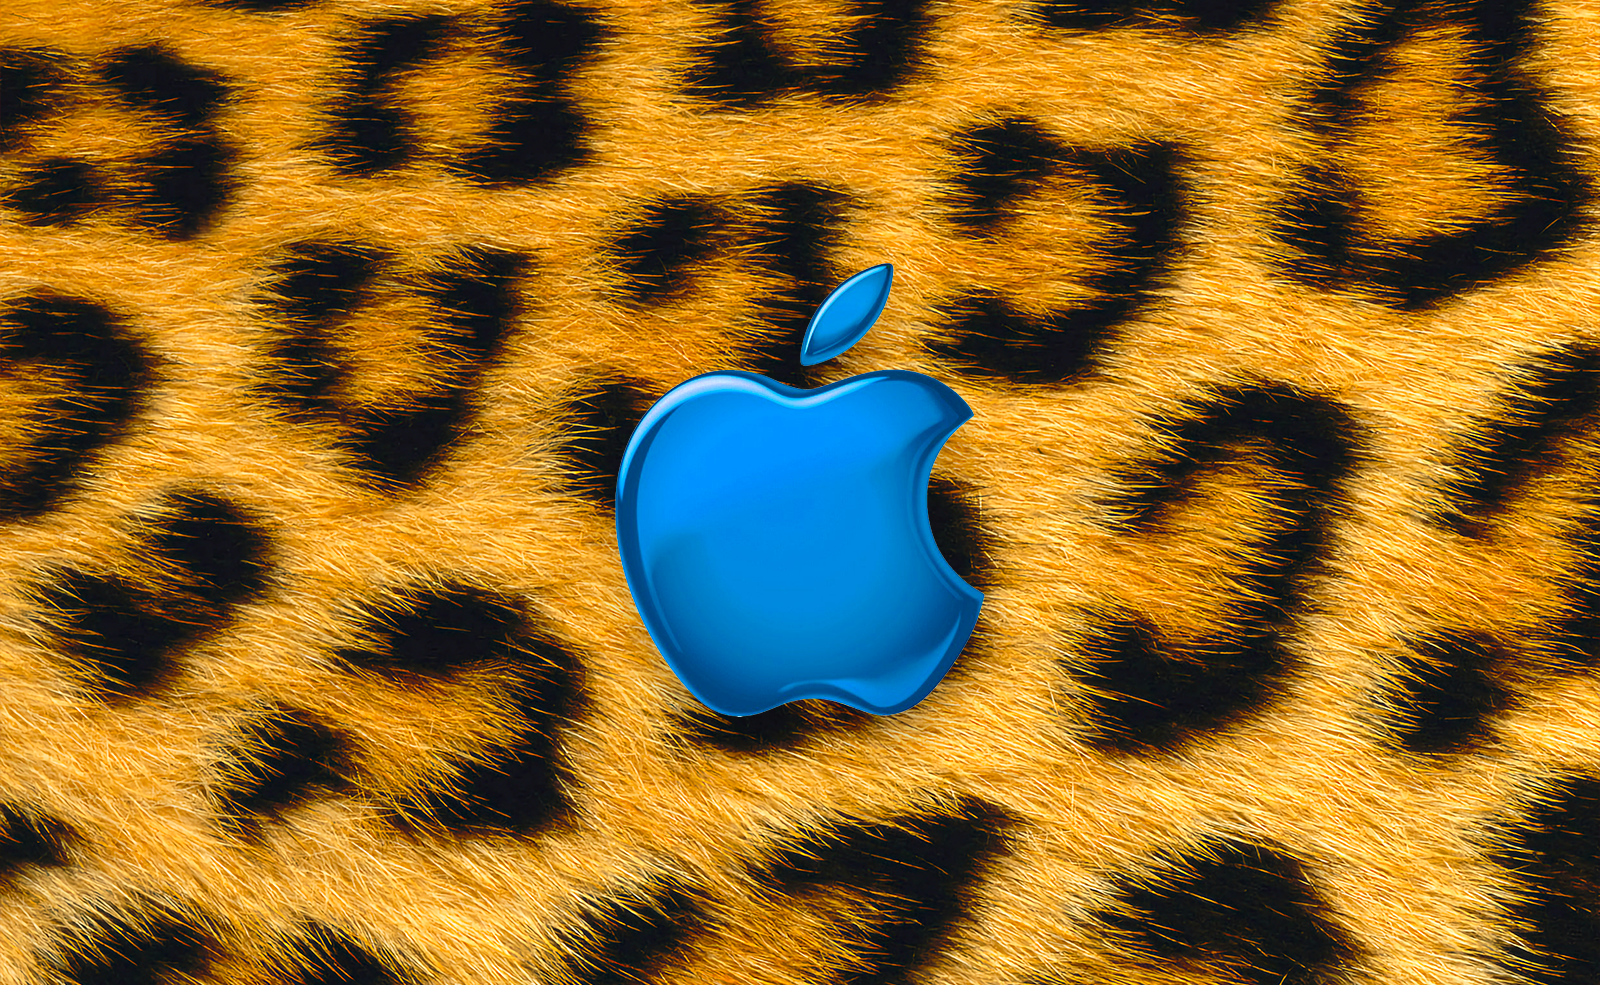 Fonds d’écran • Le retour de Mac OS X Jaguar sur vos écrans